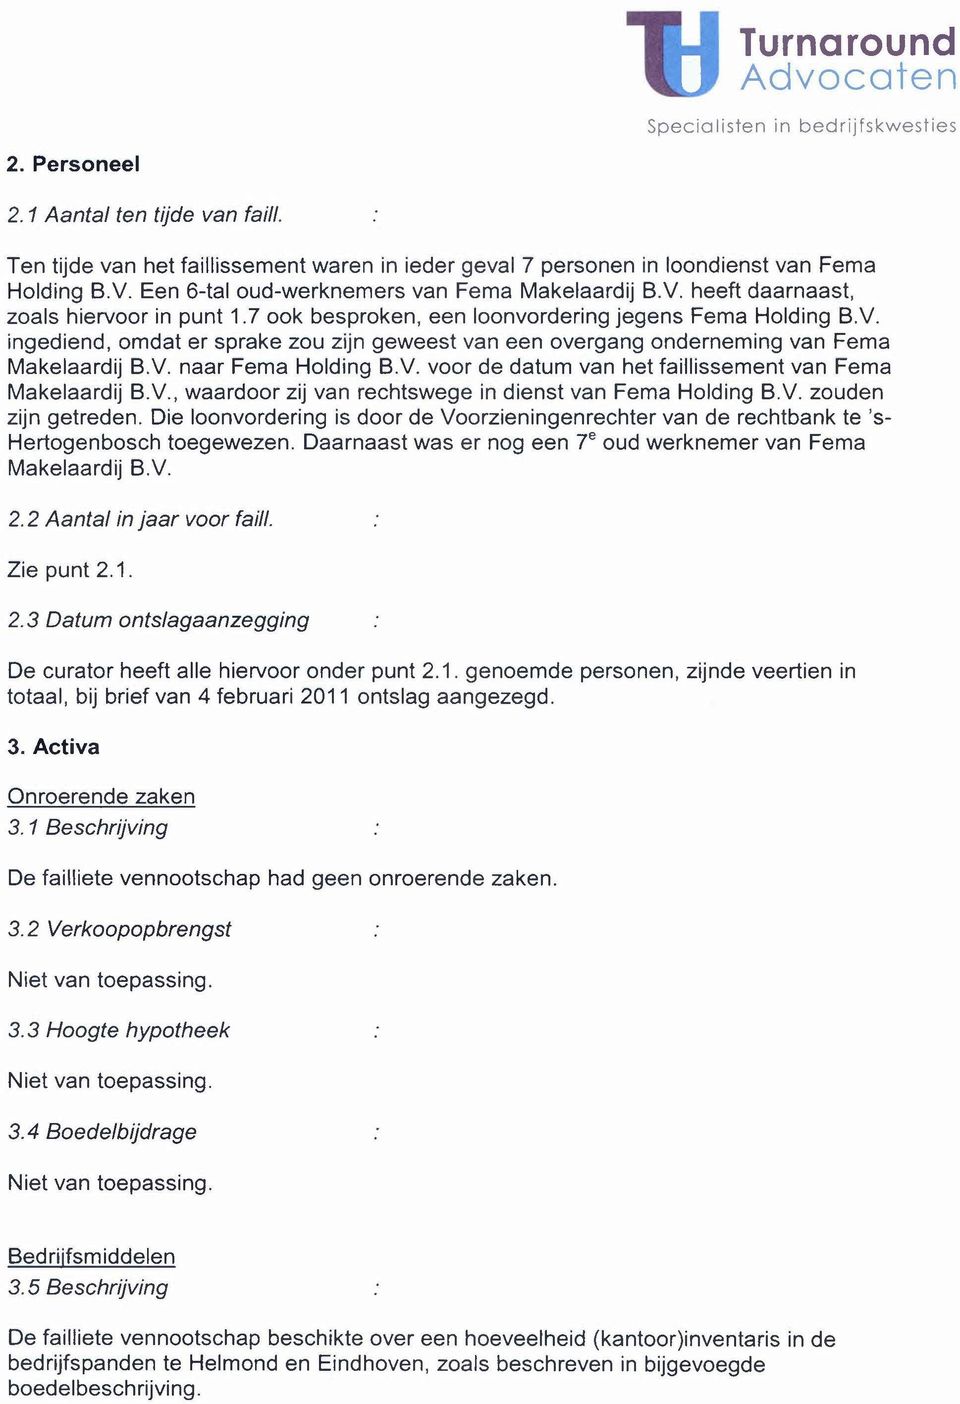 V., waardoor zij van rechtswege in dienst van Fema Holding B.V. zouden zijn getreden. Die loonvordering is door de Voorzieningenrechter van de rechtbank te 's- Hertogenbosch toegewezen.